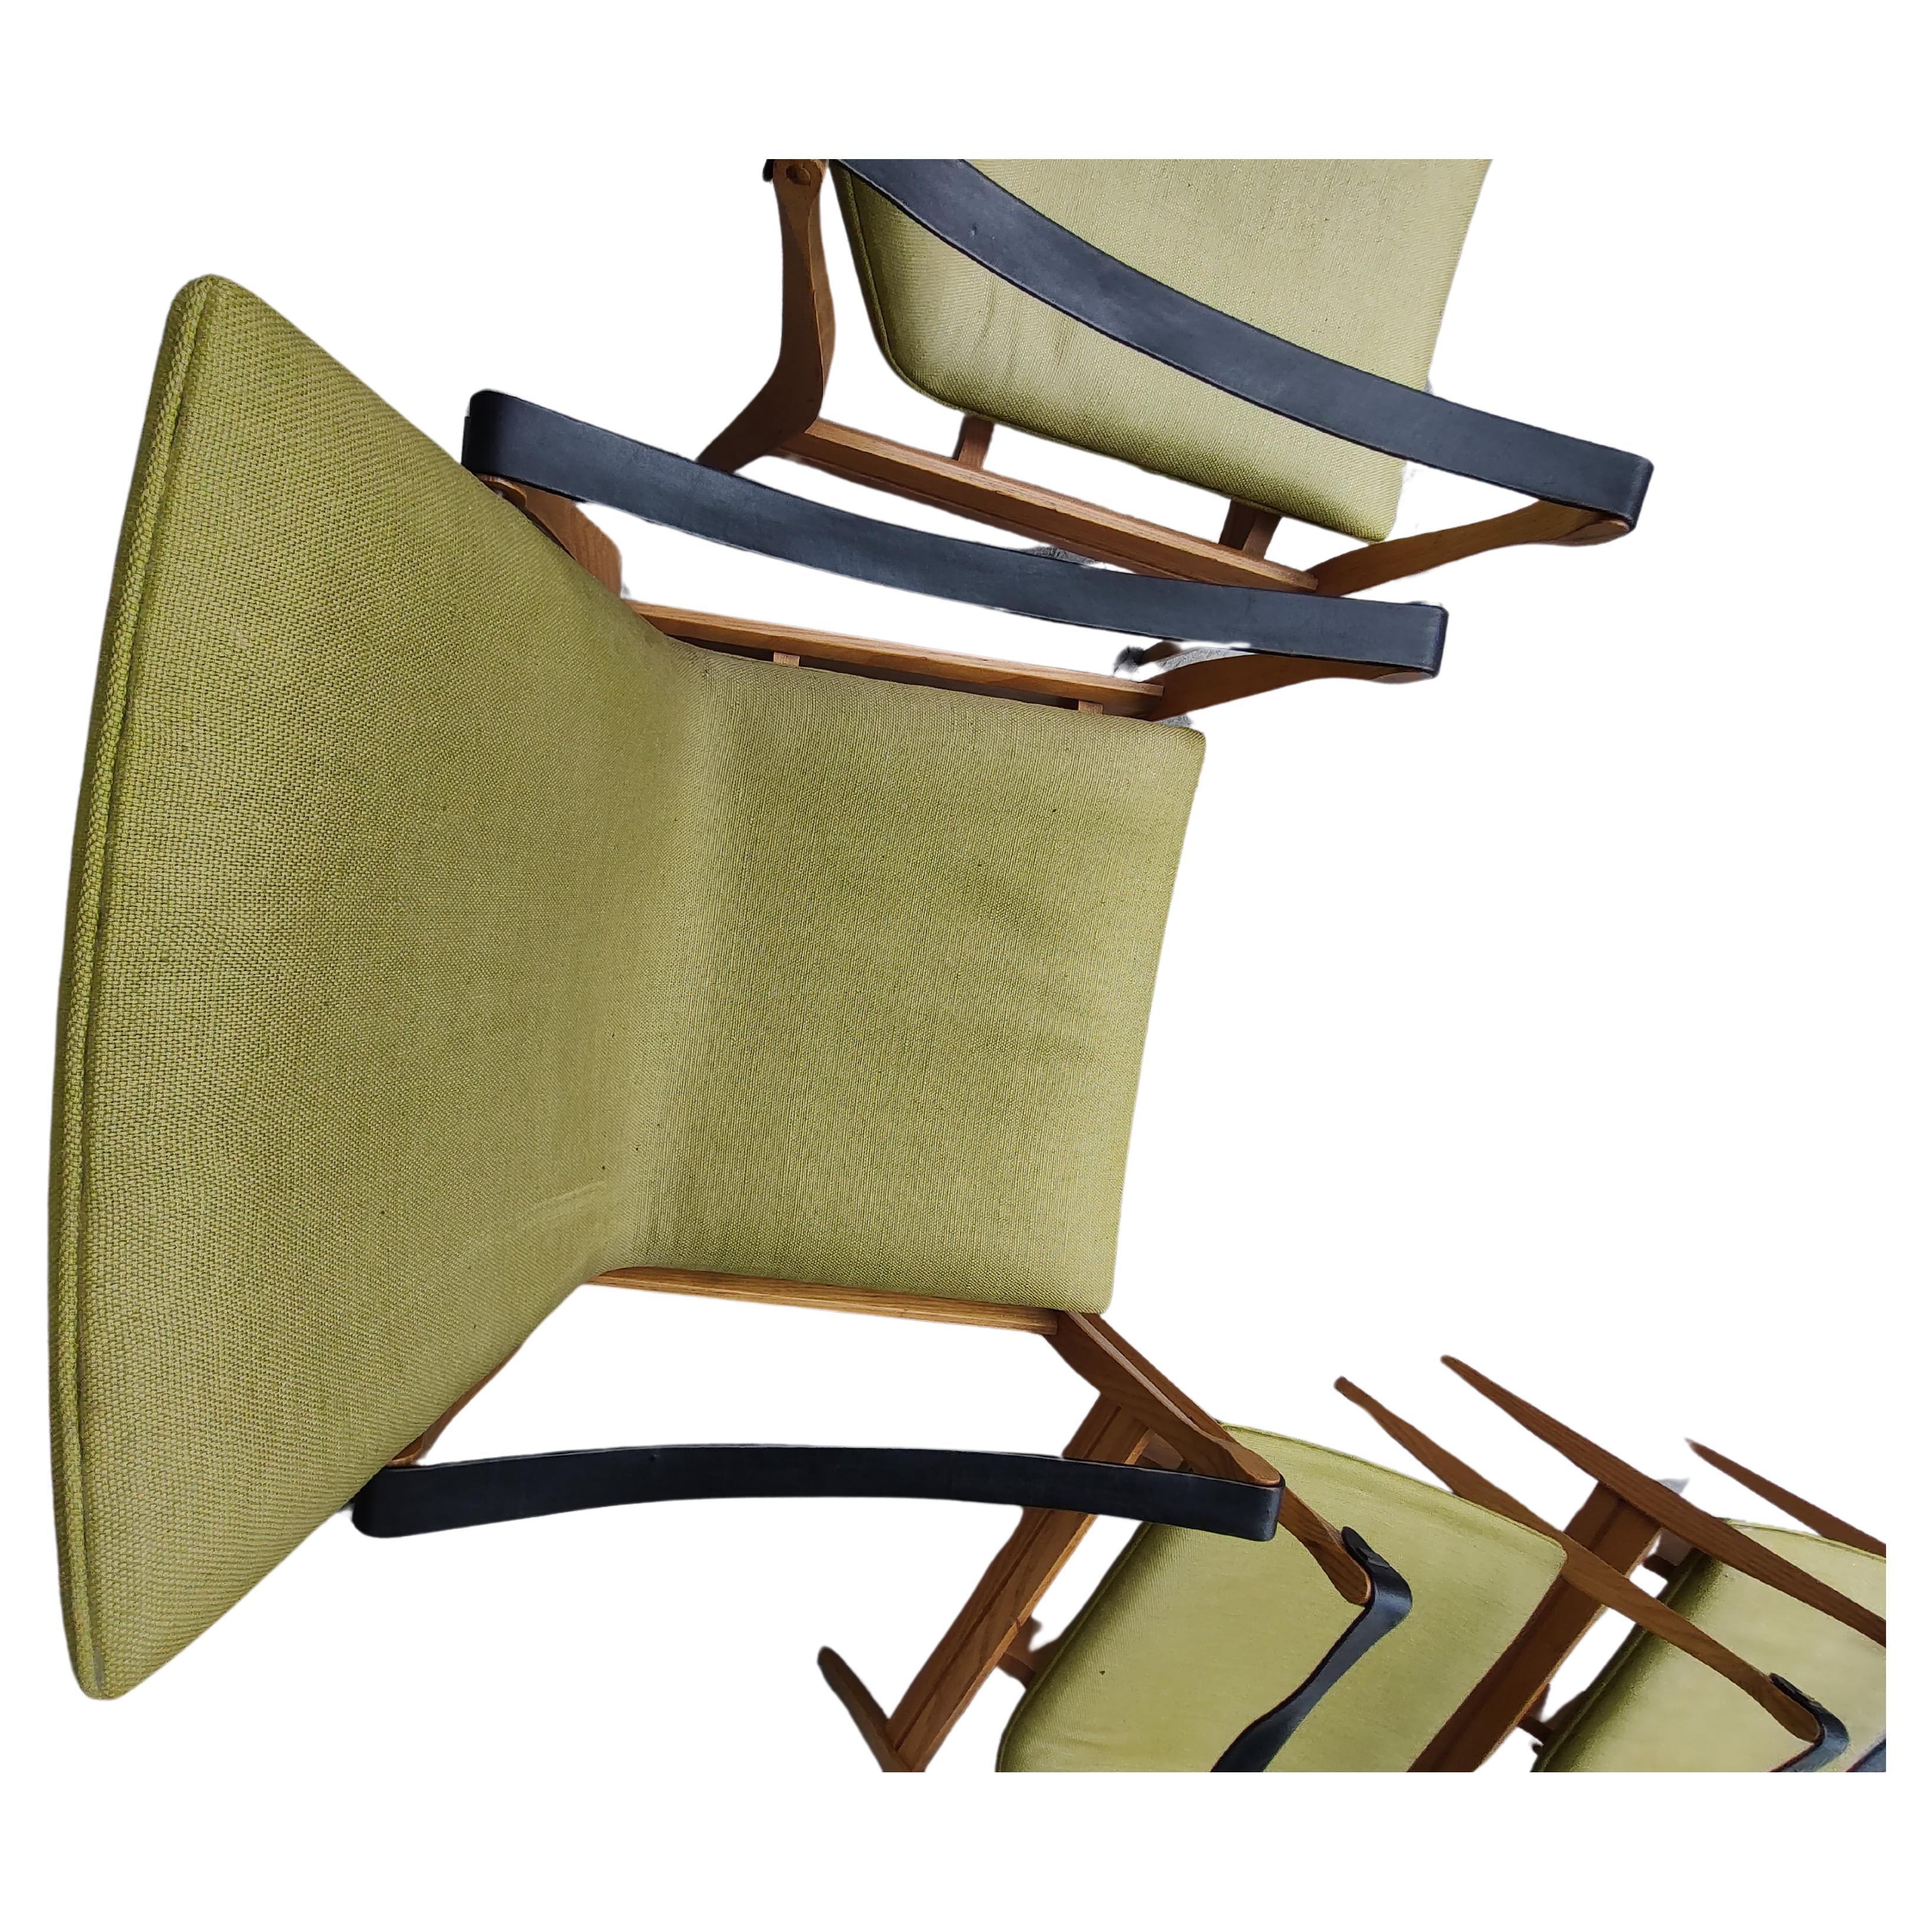 Fabuleuse paire de chaises Safari par Karen et Ebbe Clemmensen pour Fritz Hansen. Montures en frêne avec lanières en cuir noir. Le tissu vert est bon et solide, sans dommage, mais un peu décoloré par le soleil. Les accents en laiton qui fixent les